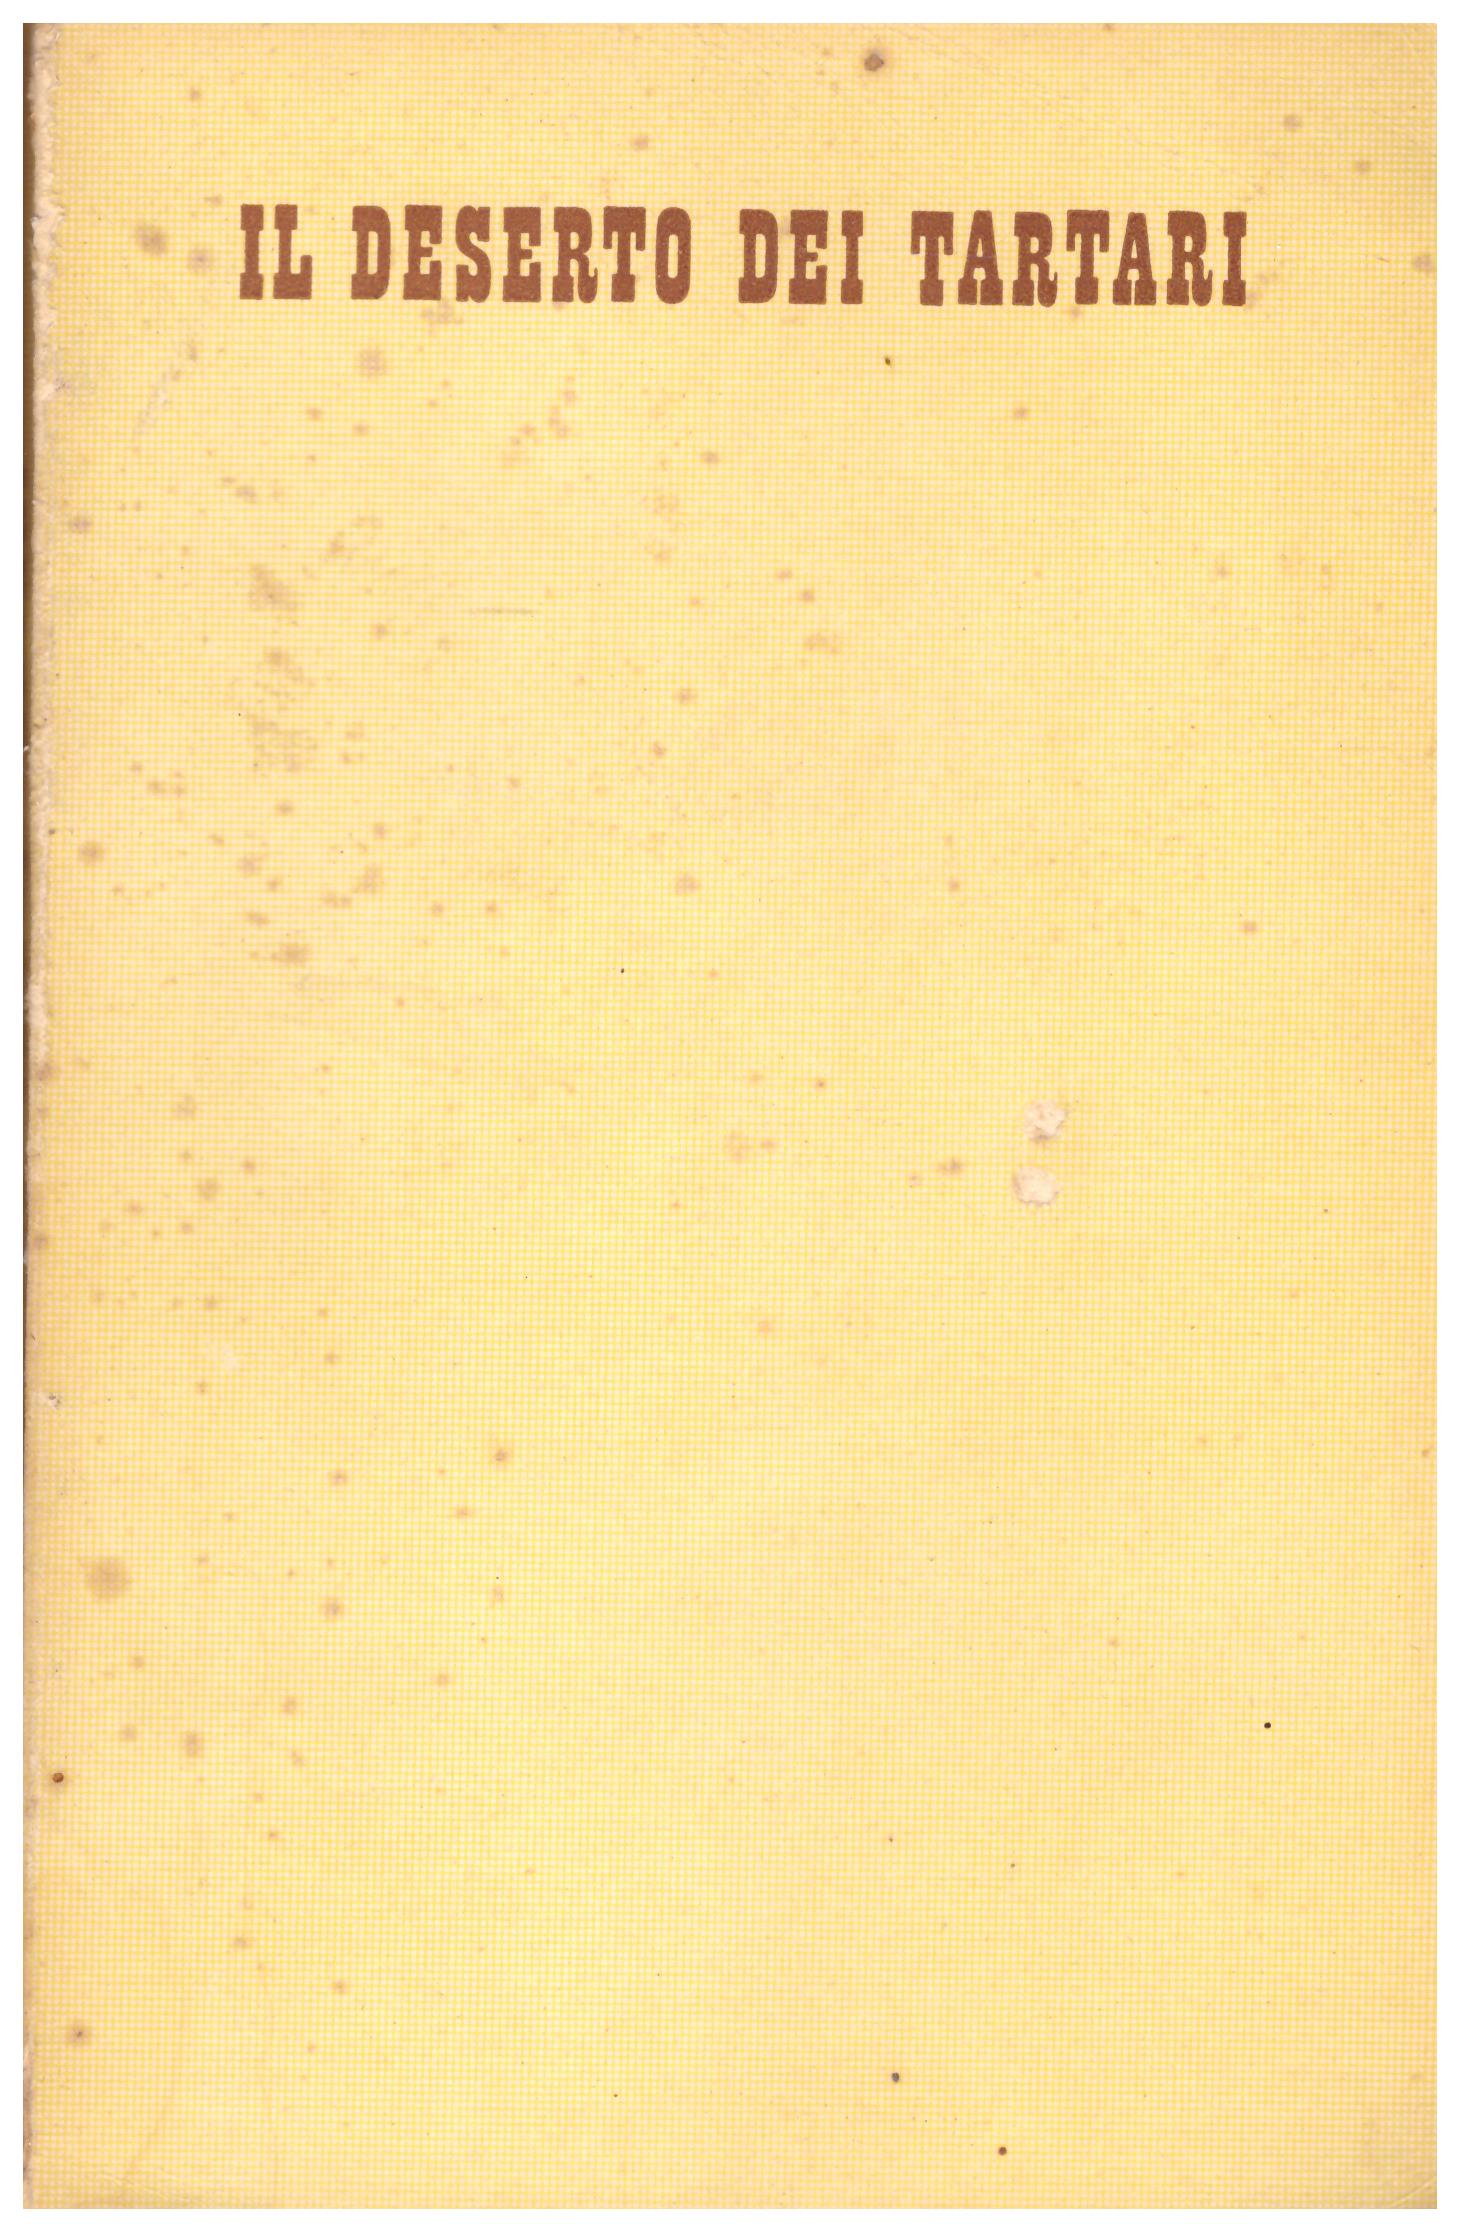 Titolo: Il deserto dei tartari Autore: Dino Buzzati Editore: Rizzoli and C. Editori 1940 Prima edizione